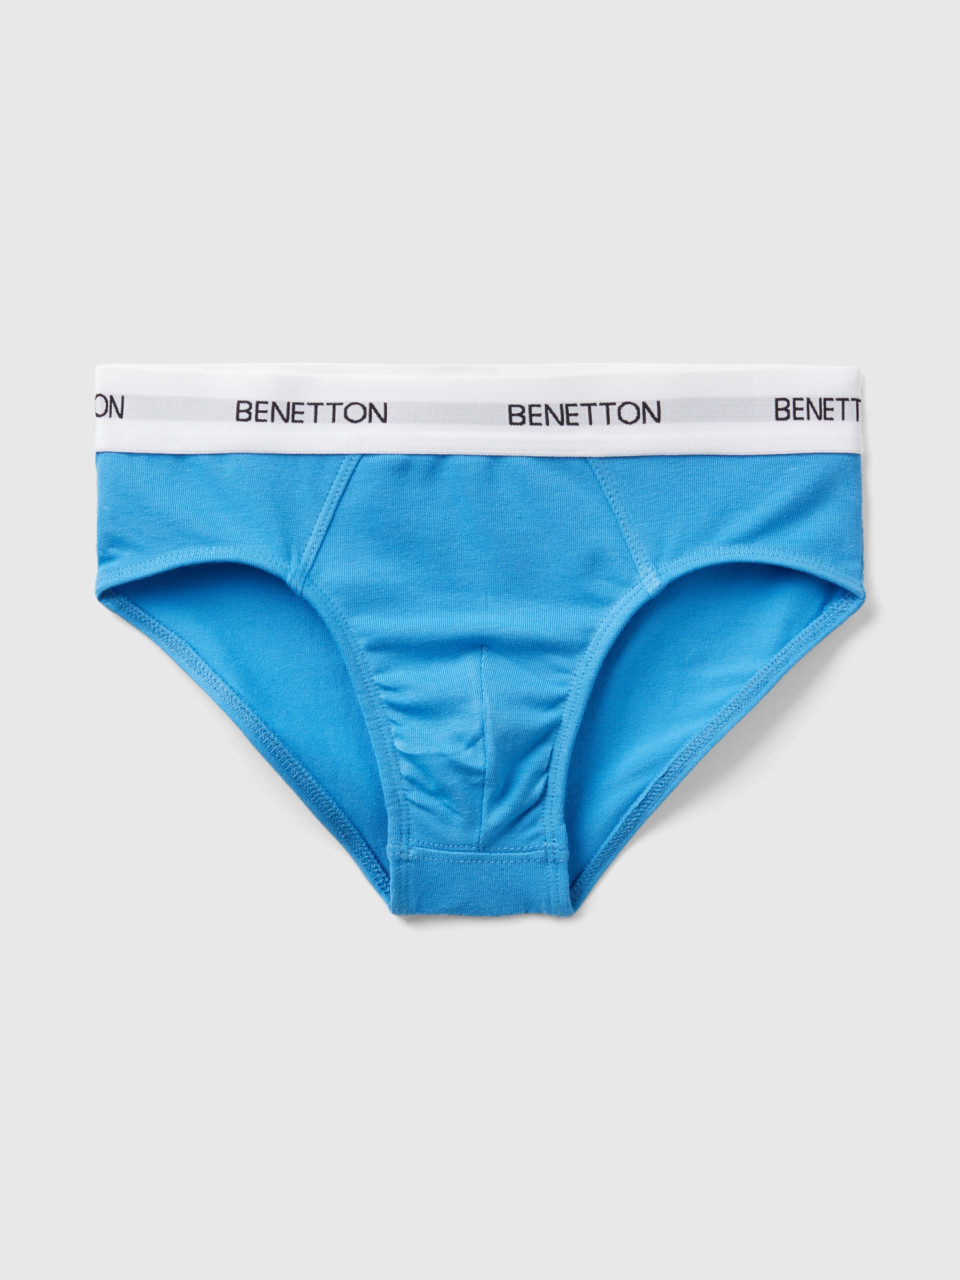 Benetton, Underwear In Stretch Organic Cotton, Bright Blue, Kids